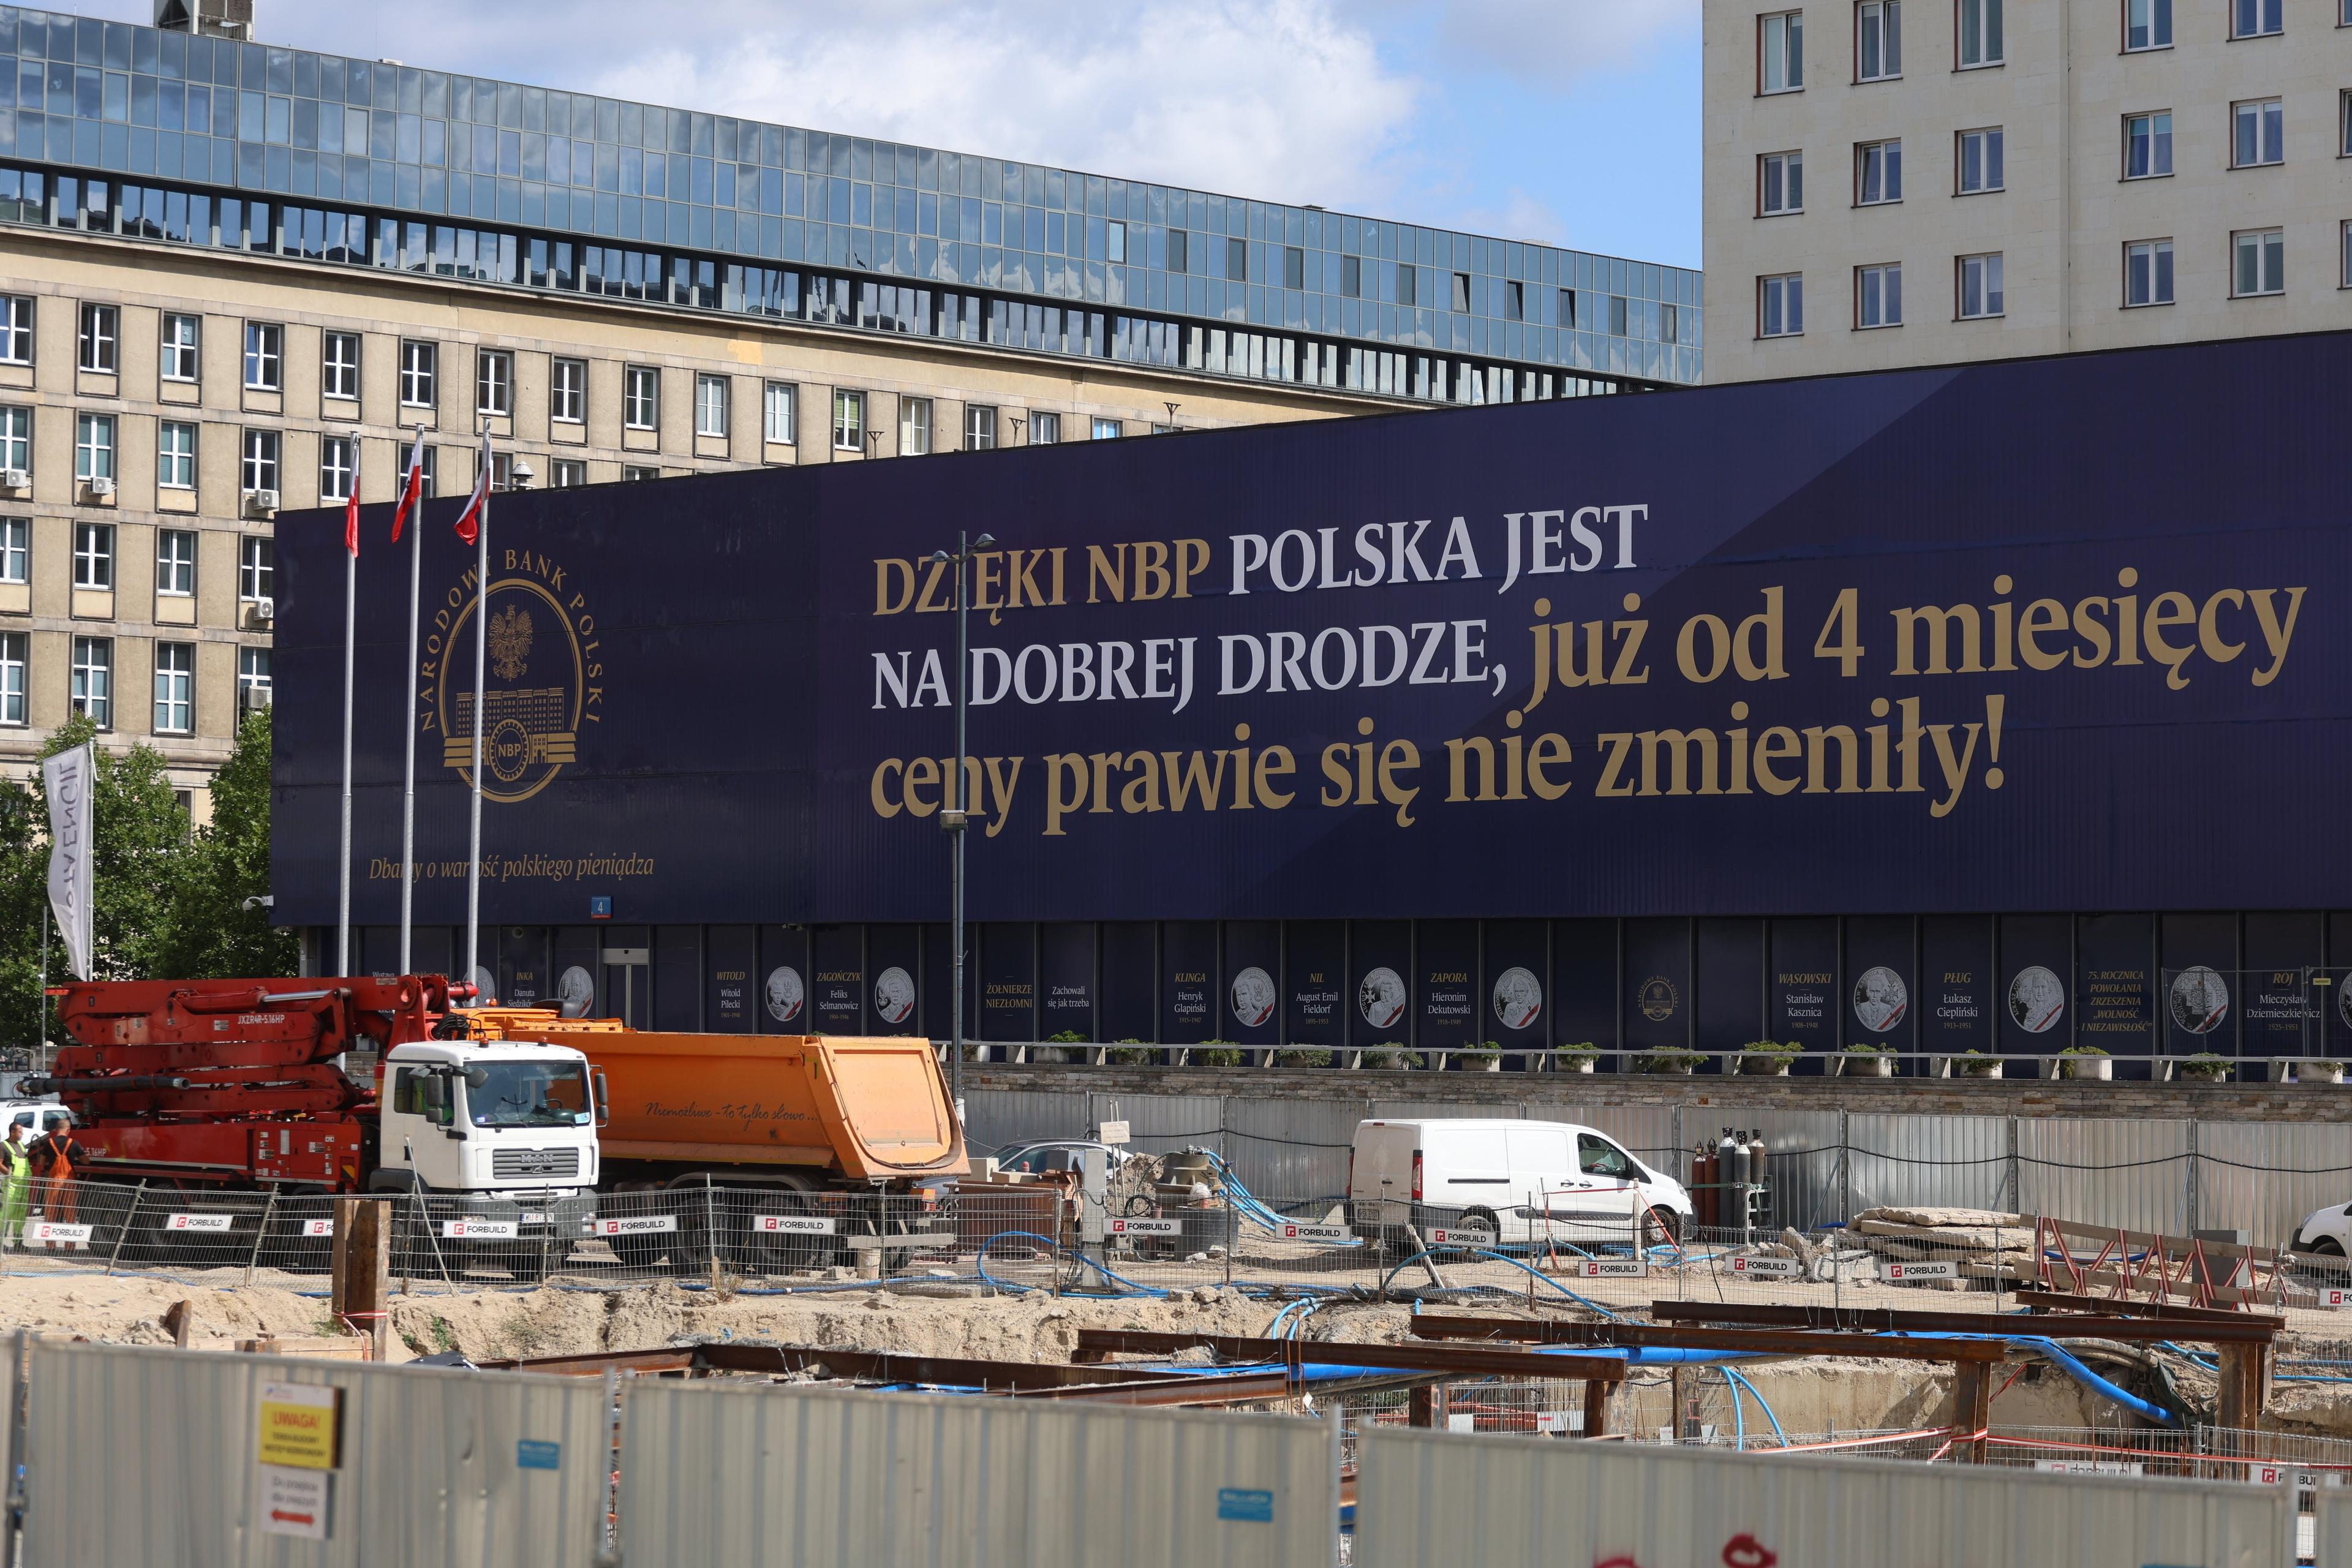 Niebieski baner na budynku z napisem "Dzięki NBP Polska jest na dobrej drodze, już od 4 miesięcy ceny prawie się nie zmieniły"